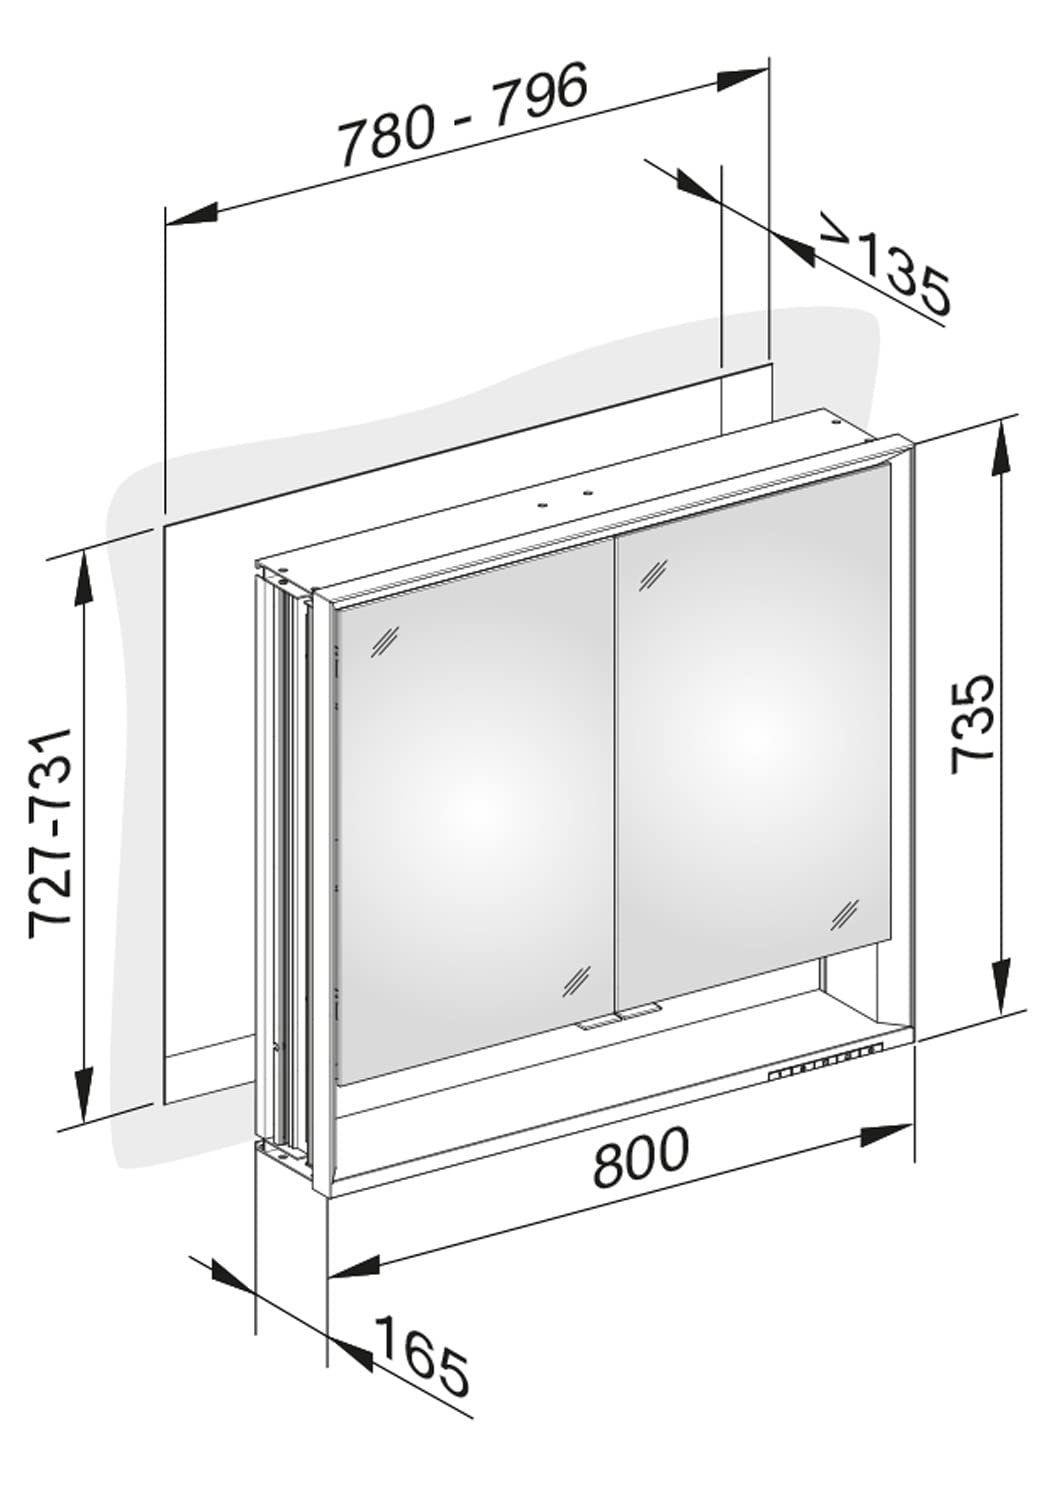 (Badezimmerspiegelschrank dimmbar, 2-türig, cm Aluminium-Korpus, Royal LED) Spiegelschrank einstellbare Lichtfarbe, Beleuchtung Keuco Lumos mit 80